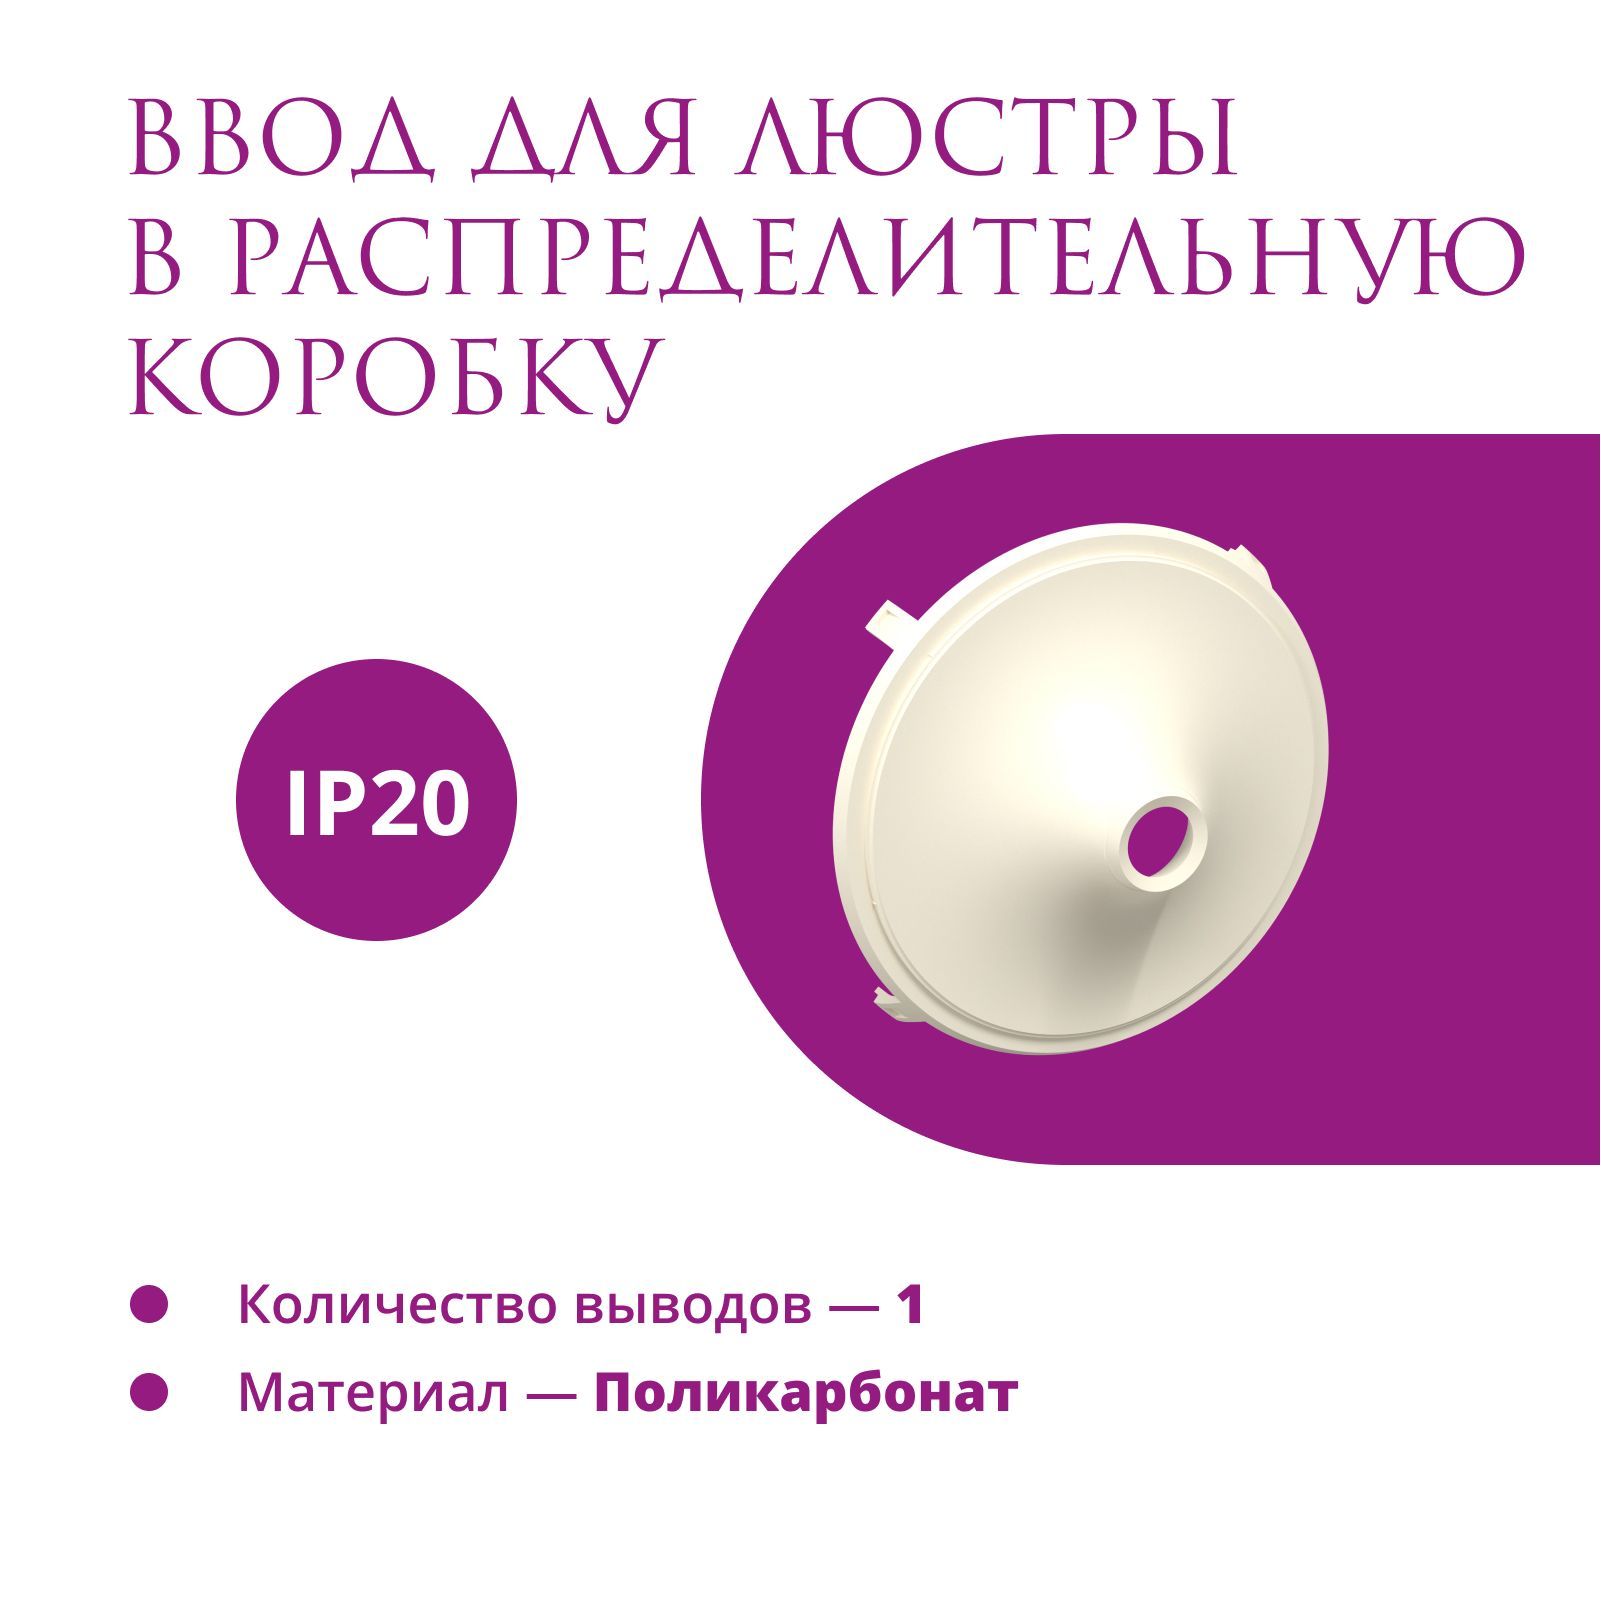 фото Ввод в распределительную коробку для светильника onekeyelectro (rotondo), цвет бежевый